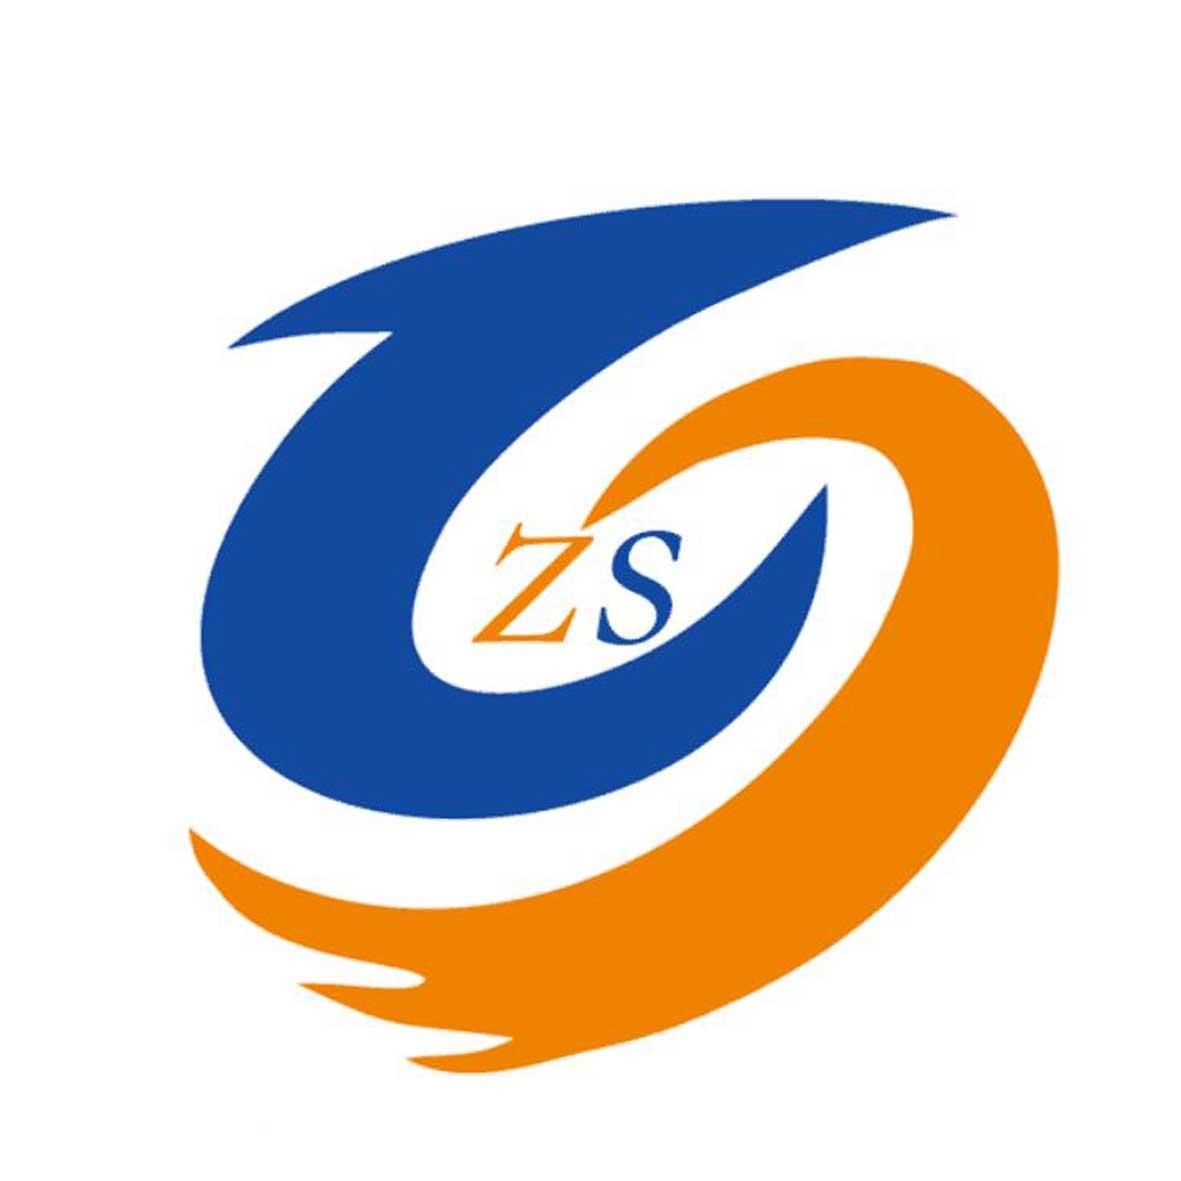 商标文字zs商标注册号 23290075,商标申请人藤县中晟贸易有限责任公司